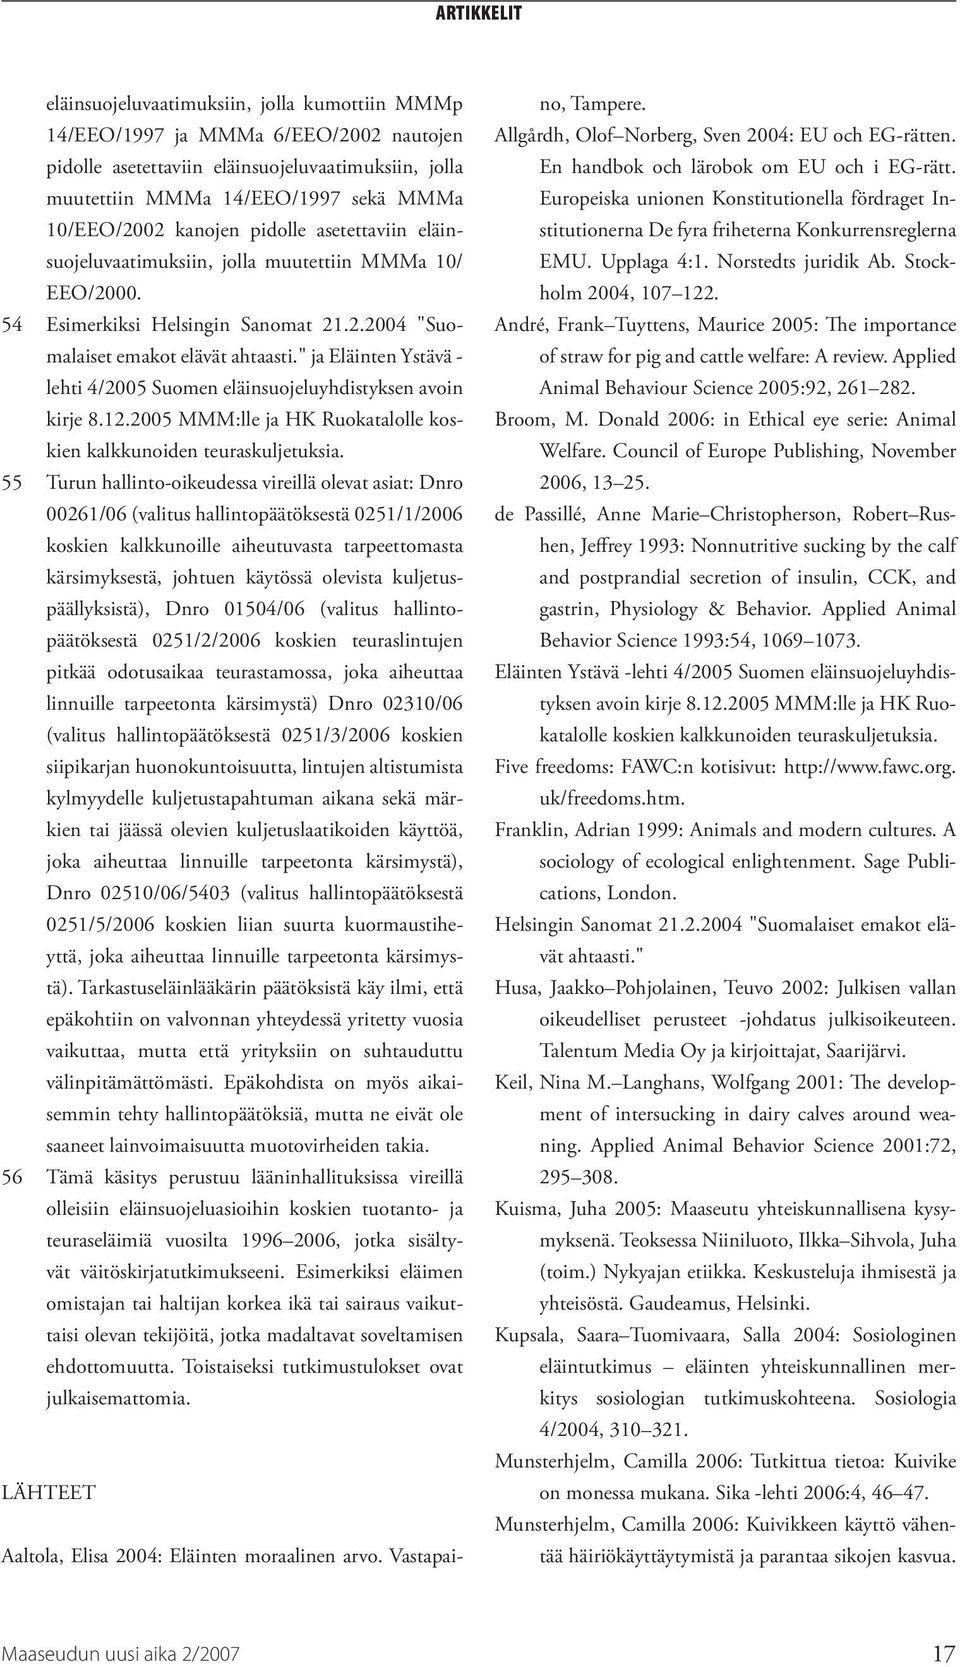 " ja Eläinten Ystävä - lehti 4/2005 Suomen eläinsuojeluyhdistyksen avoin kirje 8.12.2005 MMM:lle ja HK Ruokatalolle koskien kalkkunoiden teuraskuljetuksia.